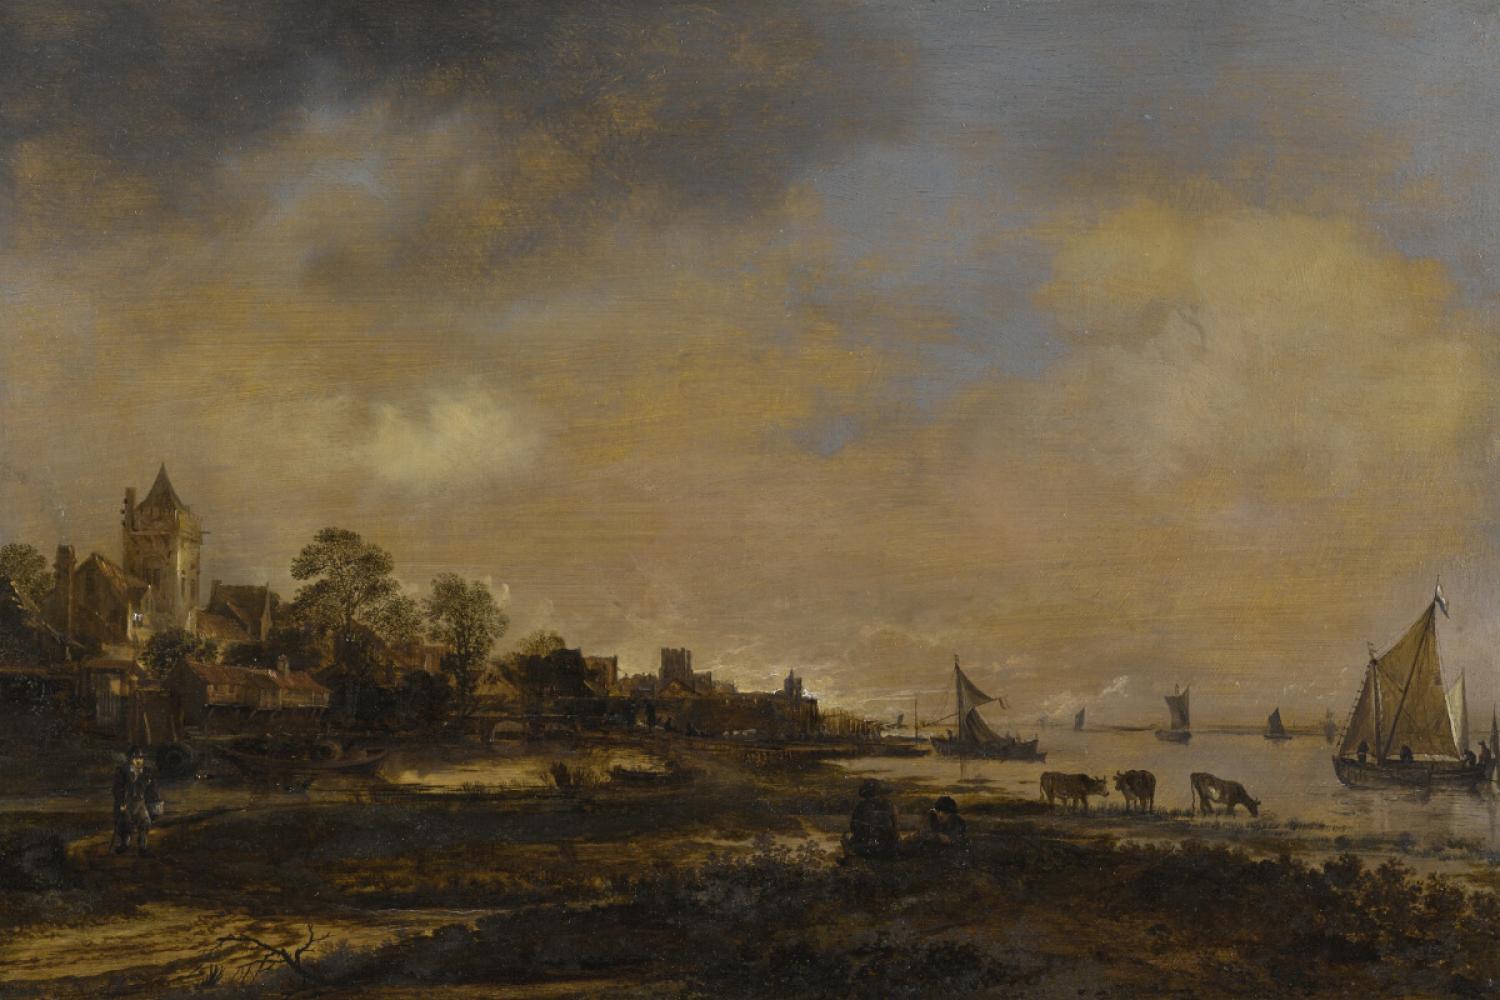 Aert van der Neer's "Wide River Landscape with Castle and Village"